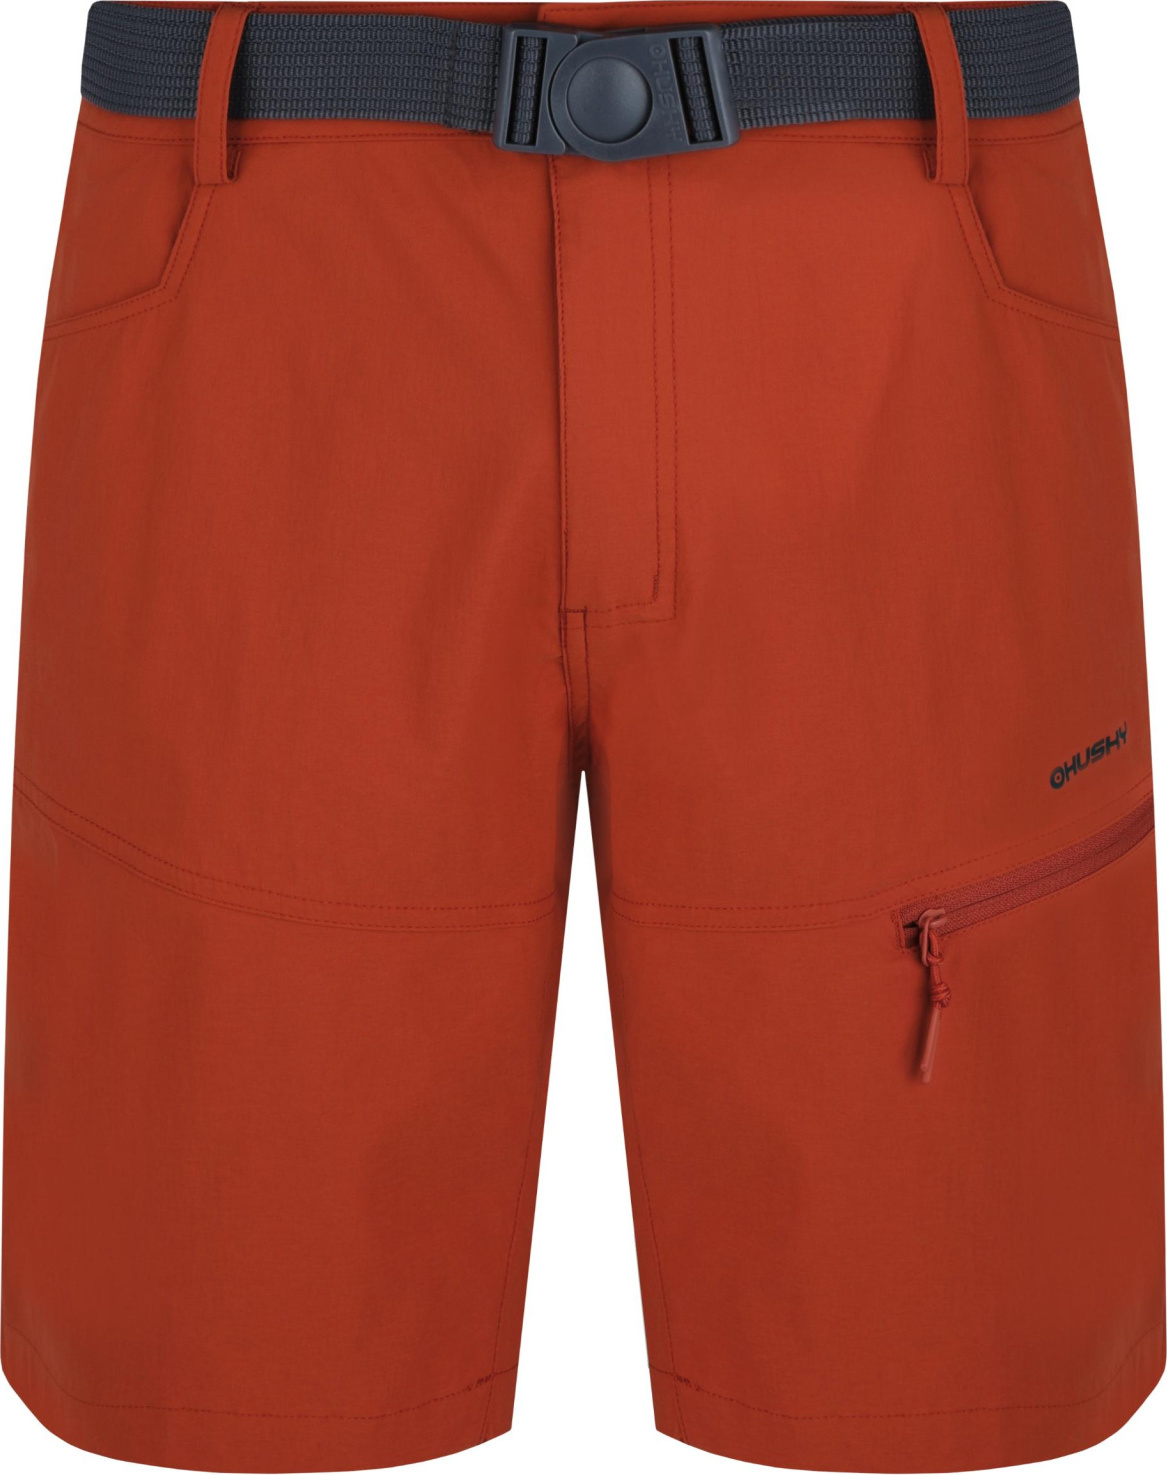 Pánské funkční šortky HUSKY Kimbi oranžové Velikost: XXL